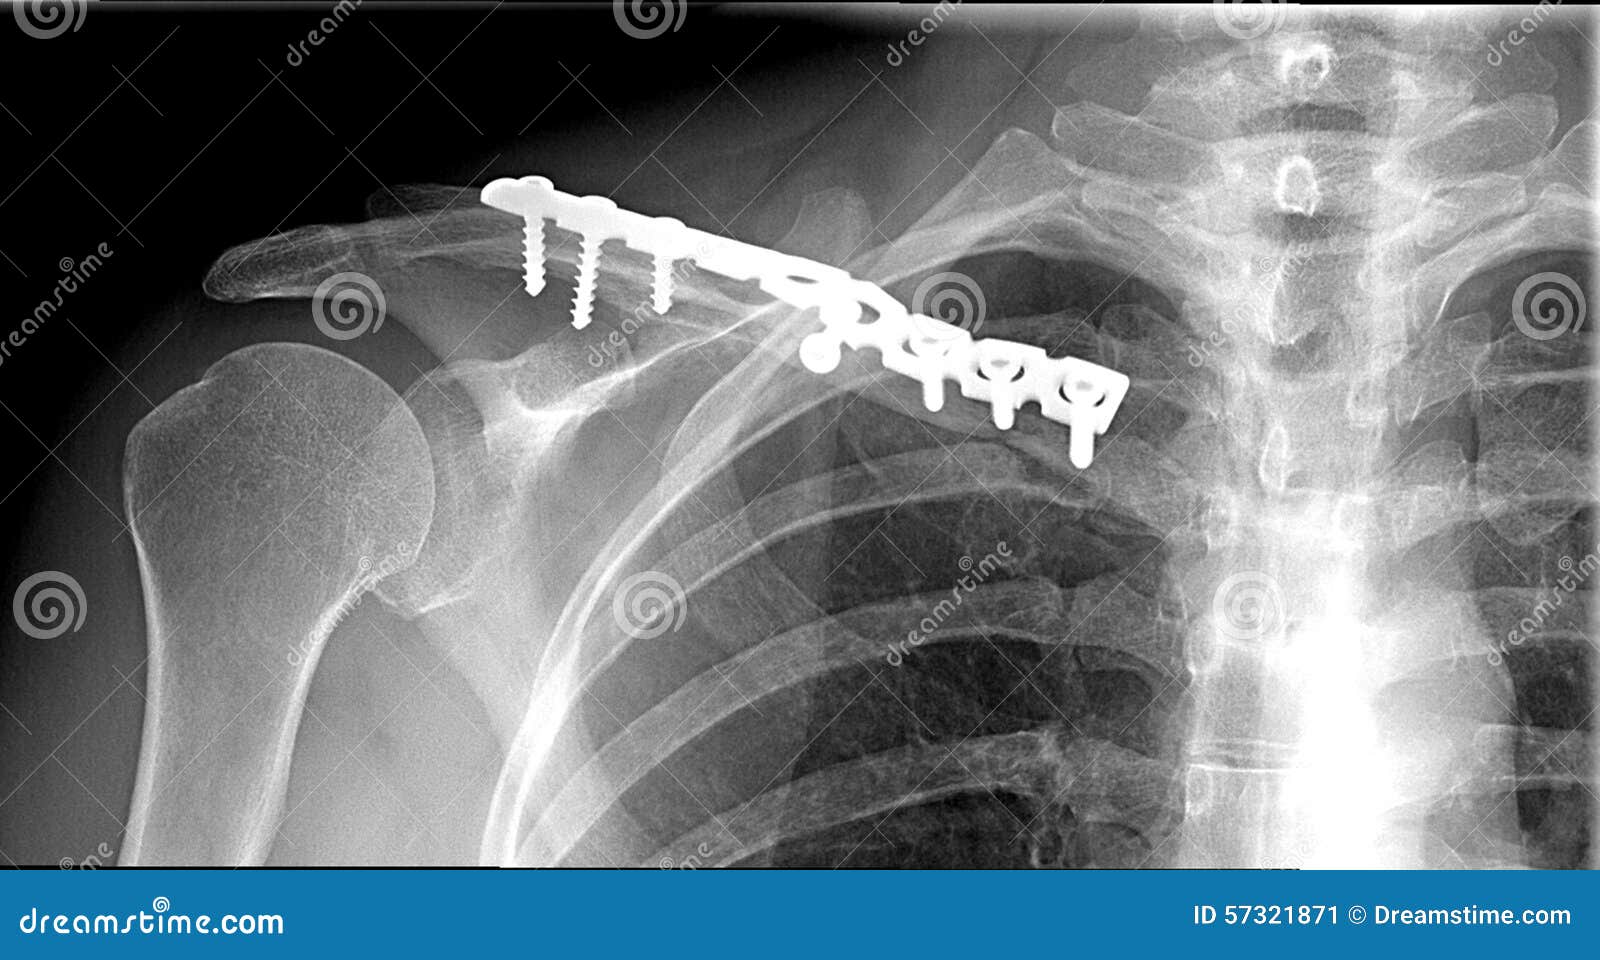 锁骨中段粉碎性骨折S型锁定钢板固定 - 病例中心(诊疗助手) - 爱爱医医学网